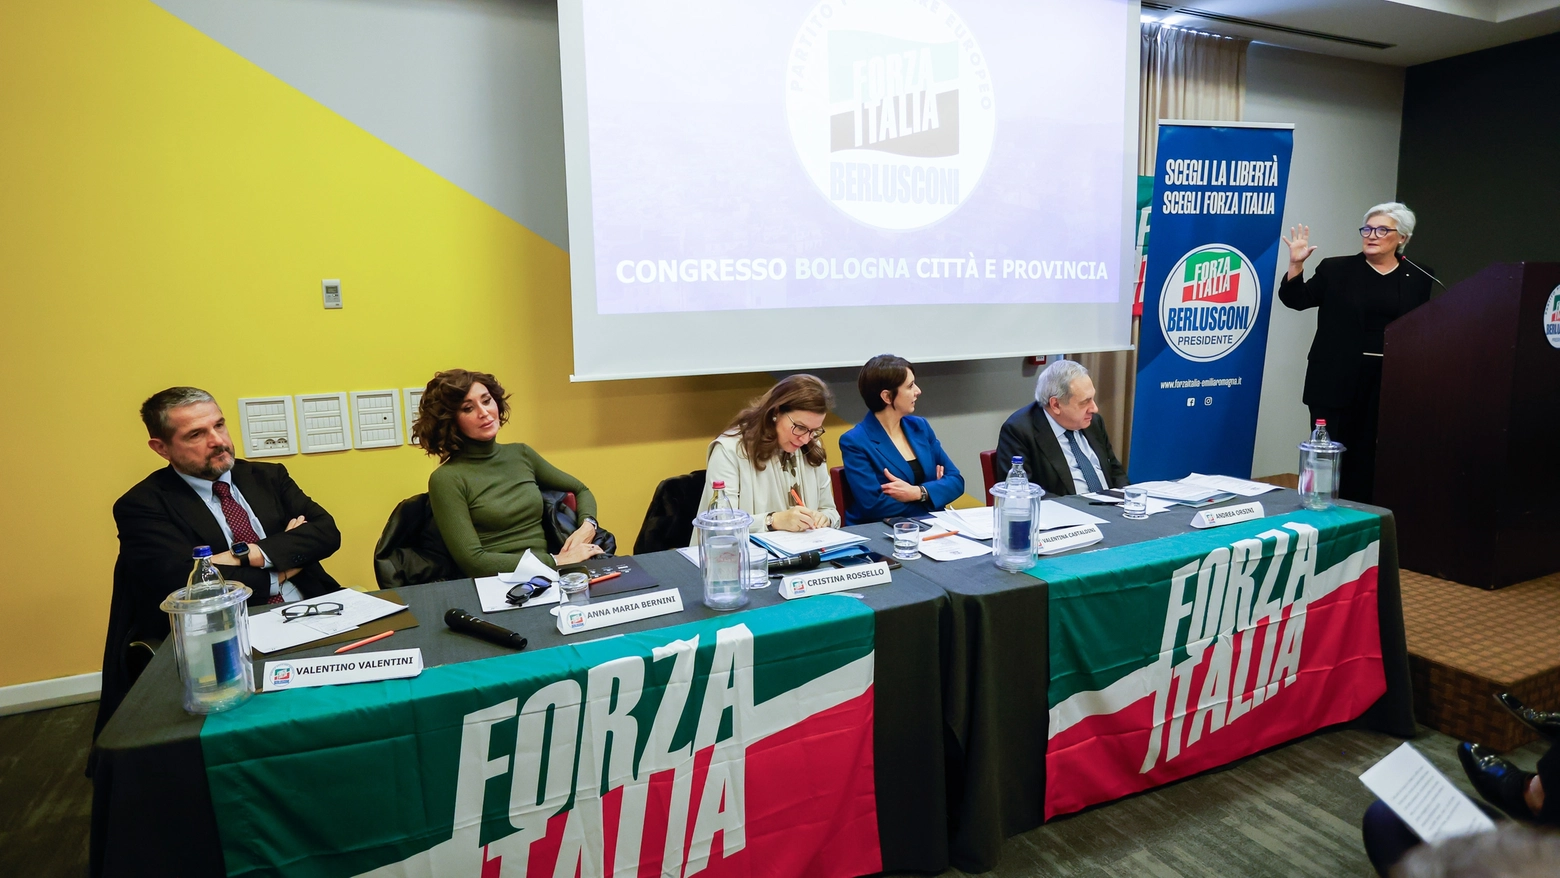 La ministra Bernini: “Per conquistare l’Emilia Romagna, questa è la volta giusta. Siamo una fabbrica che produce futuro e una famiglia politica ed elemento stabilizzatore del centrodestra”